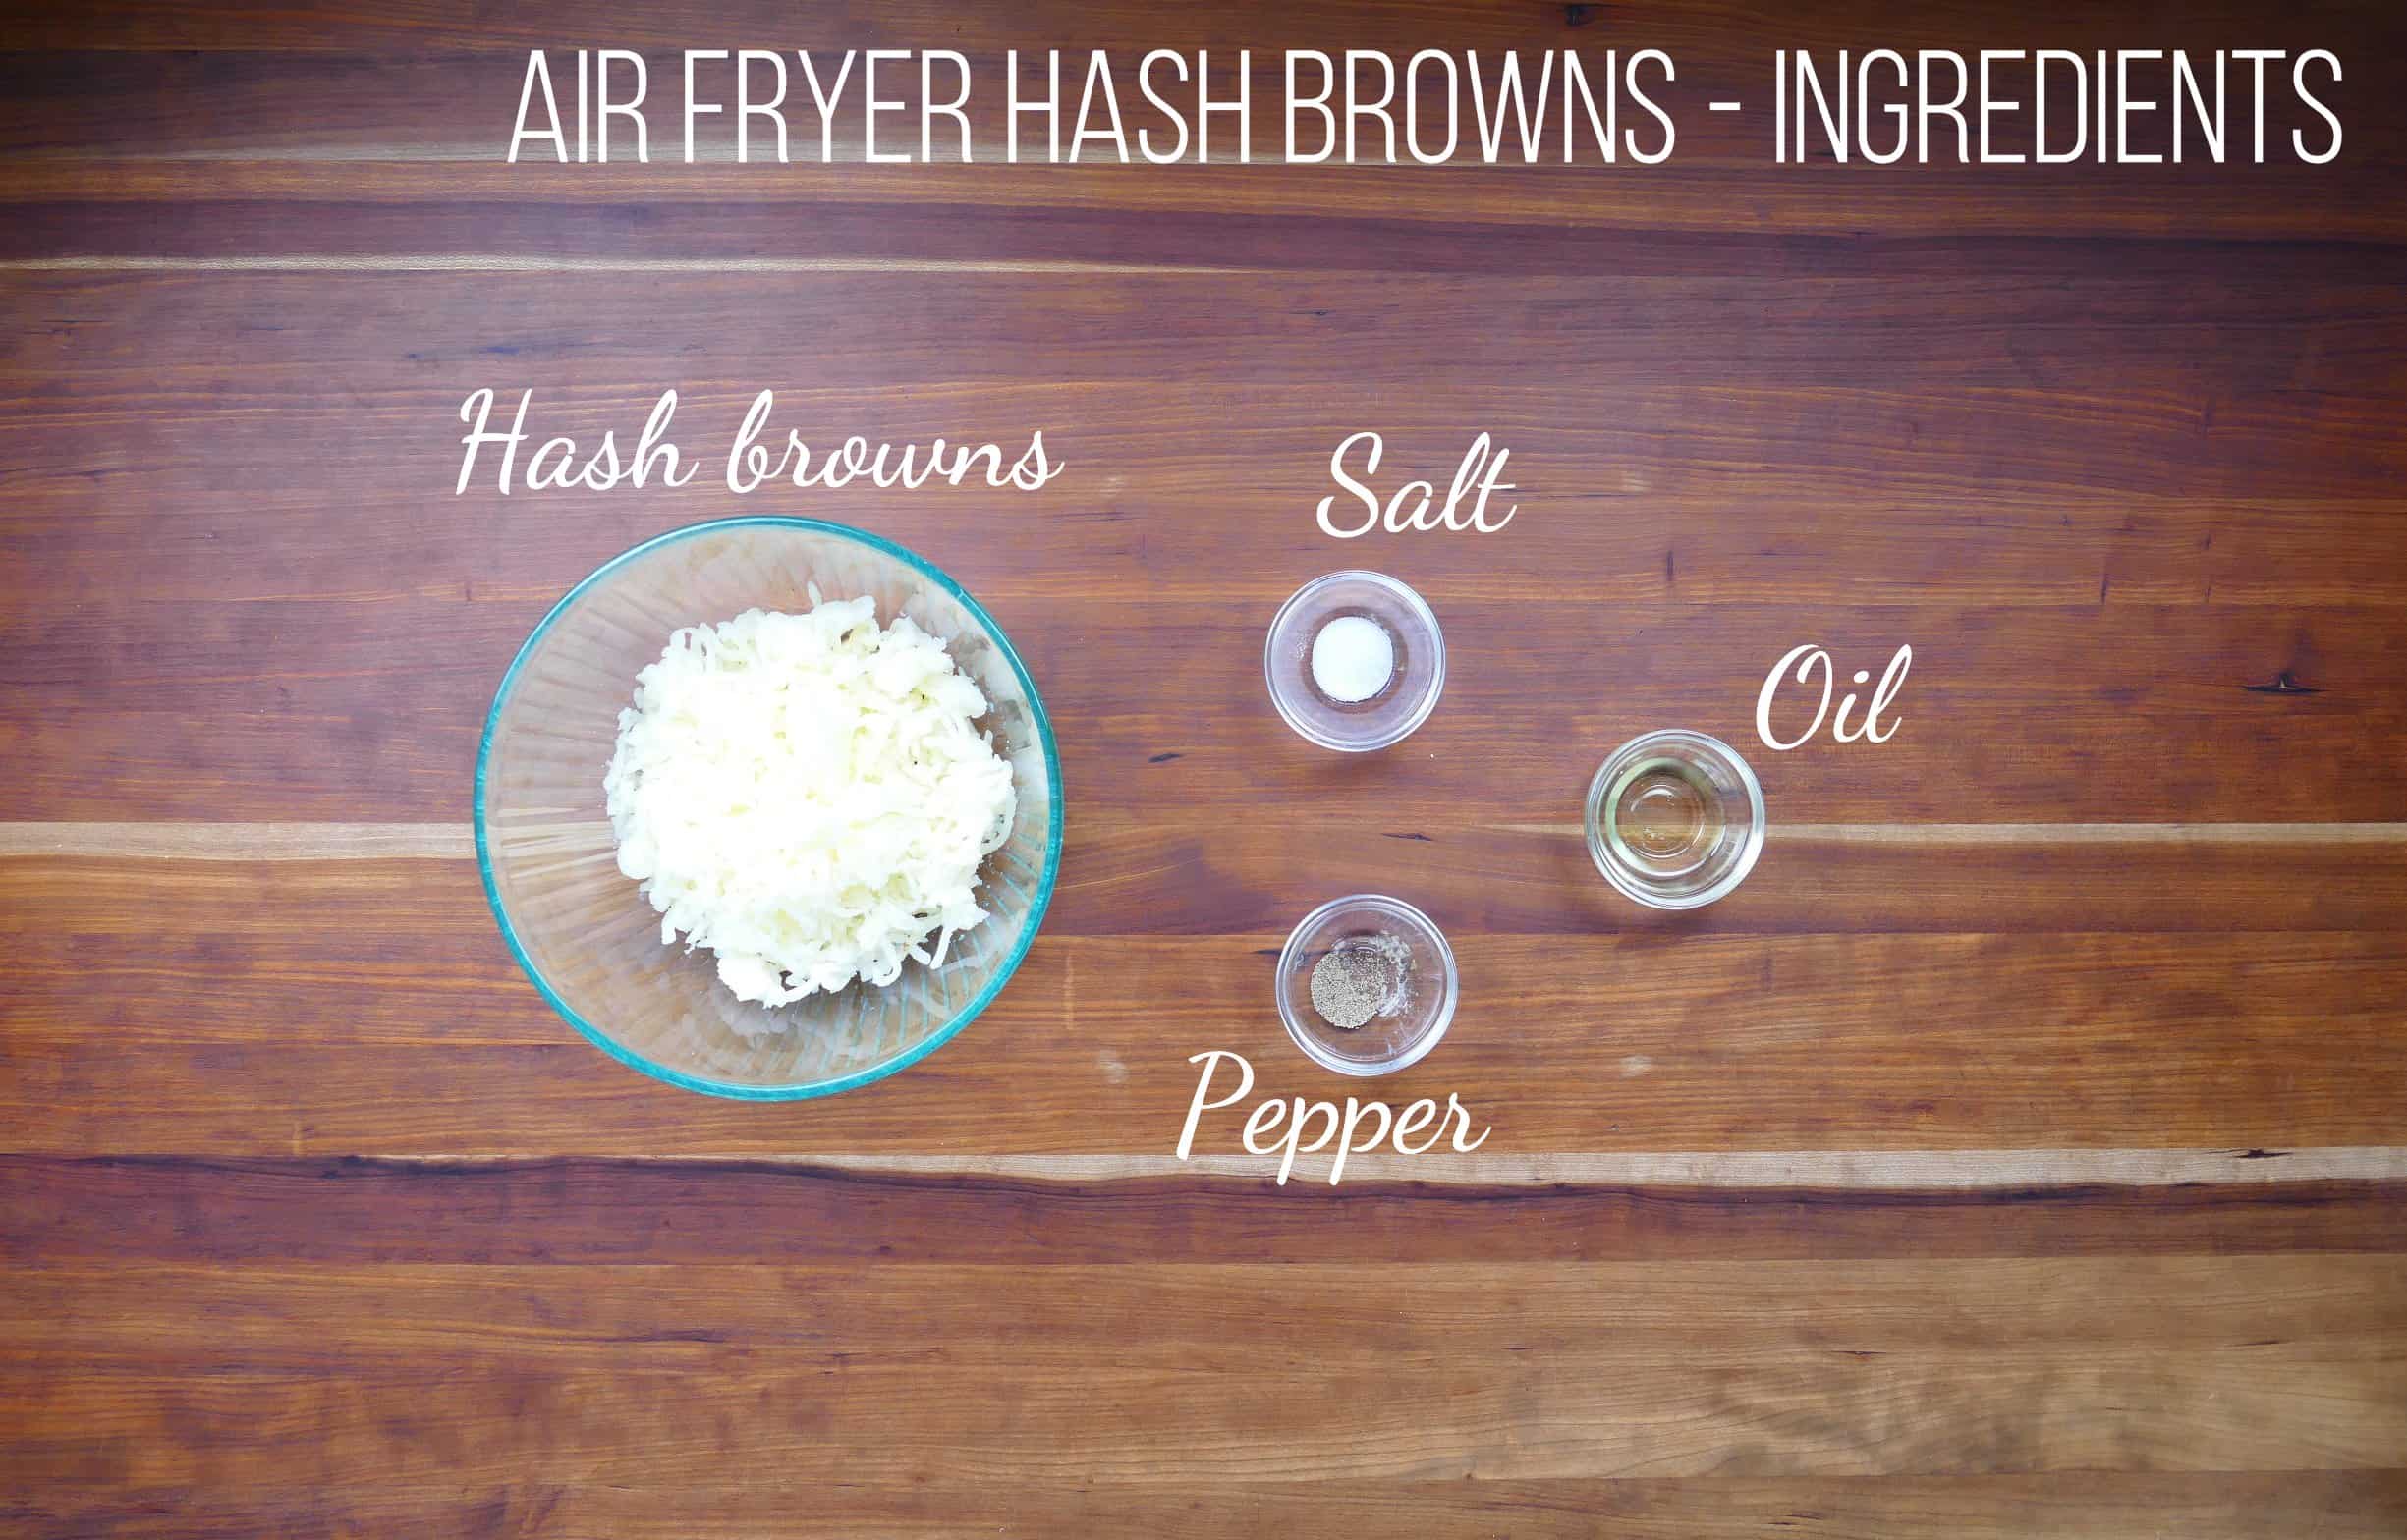 Air fryer has browns - ingredients - hash browns, salt, oil, pepper